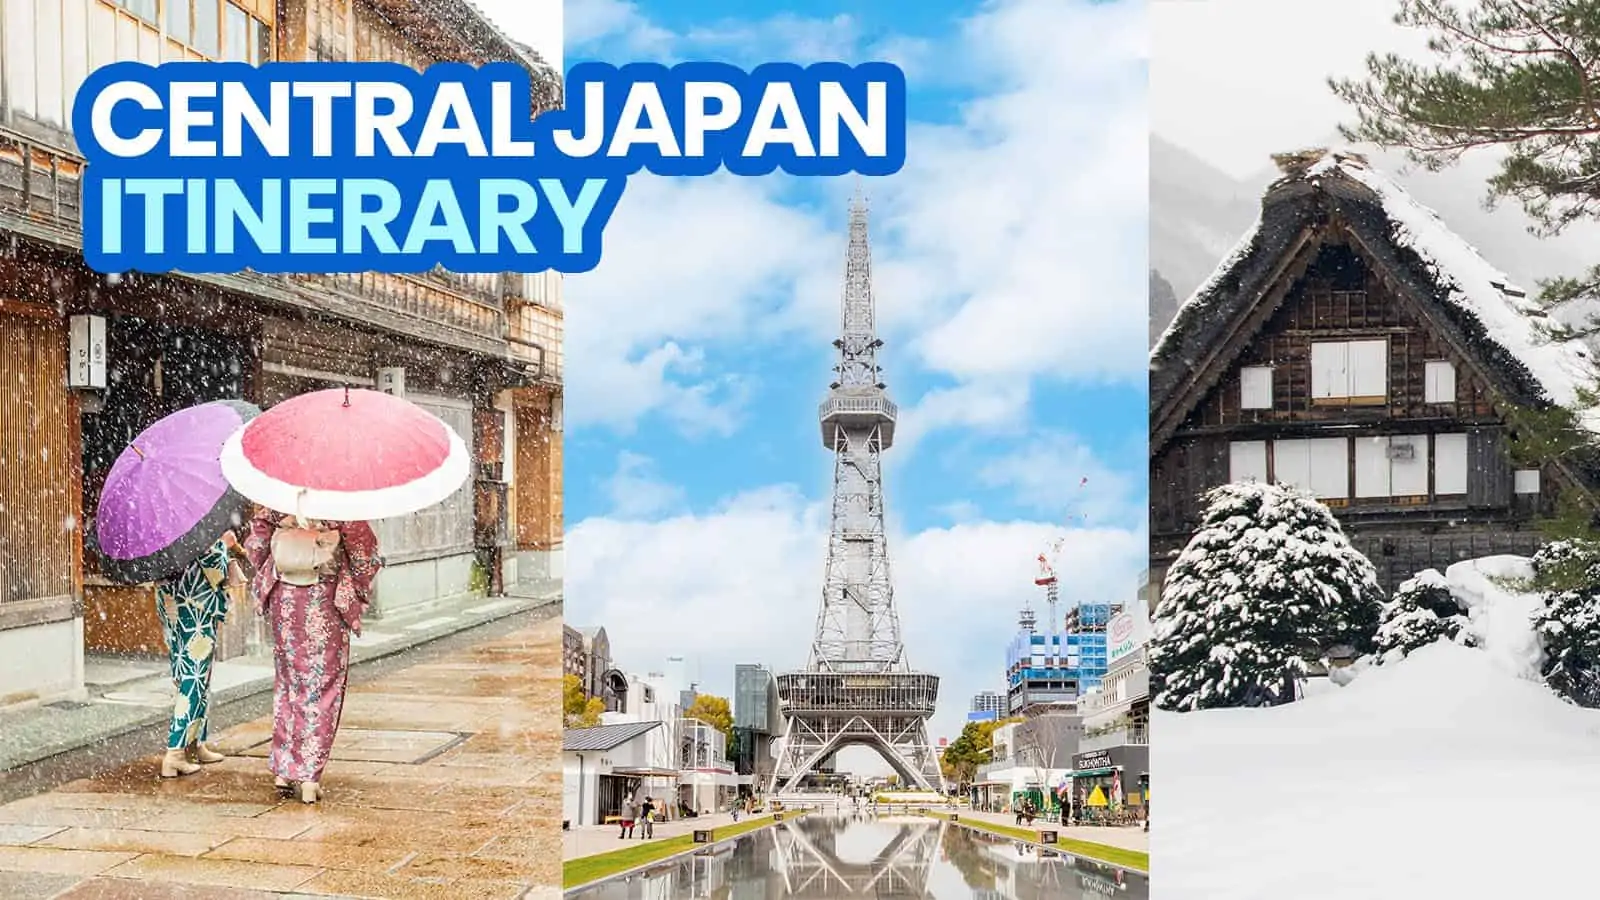 日本中部旅游路线:名古屋、白川古、金泽等5日游!